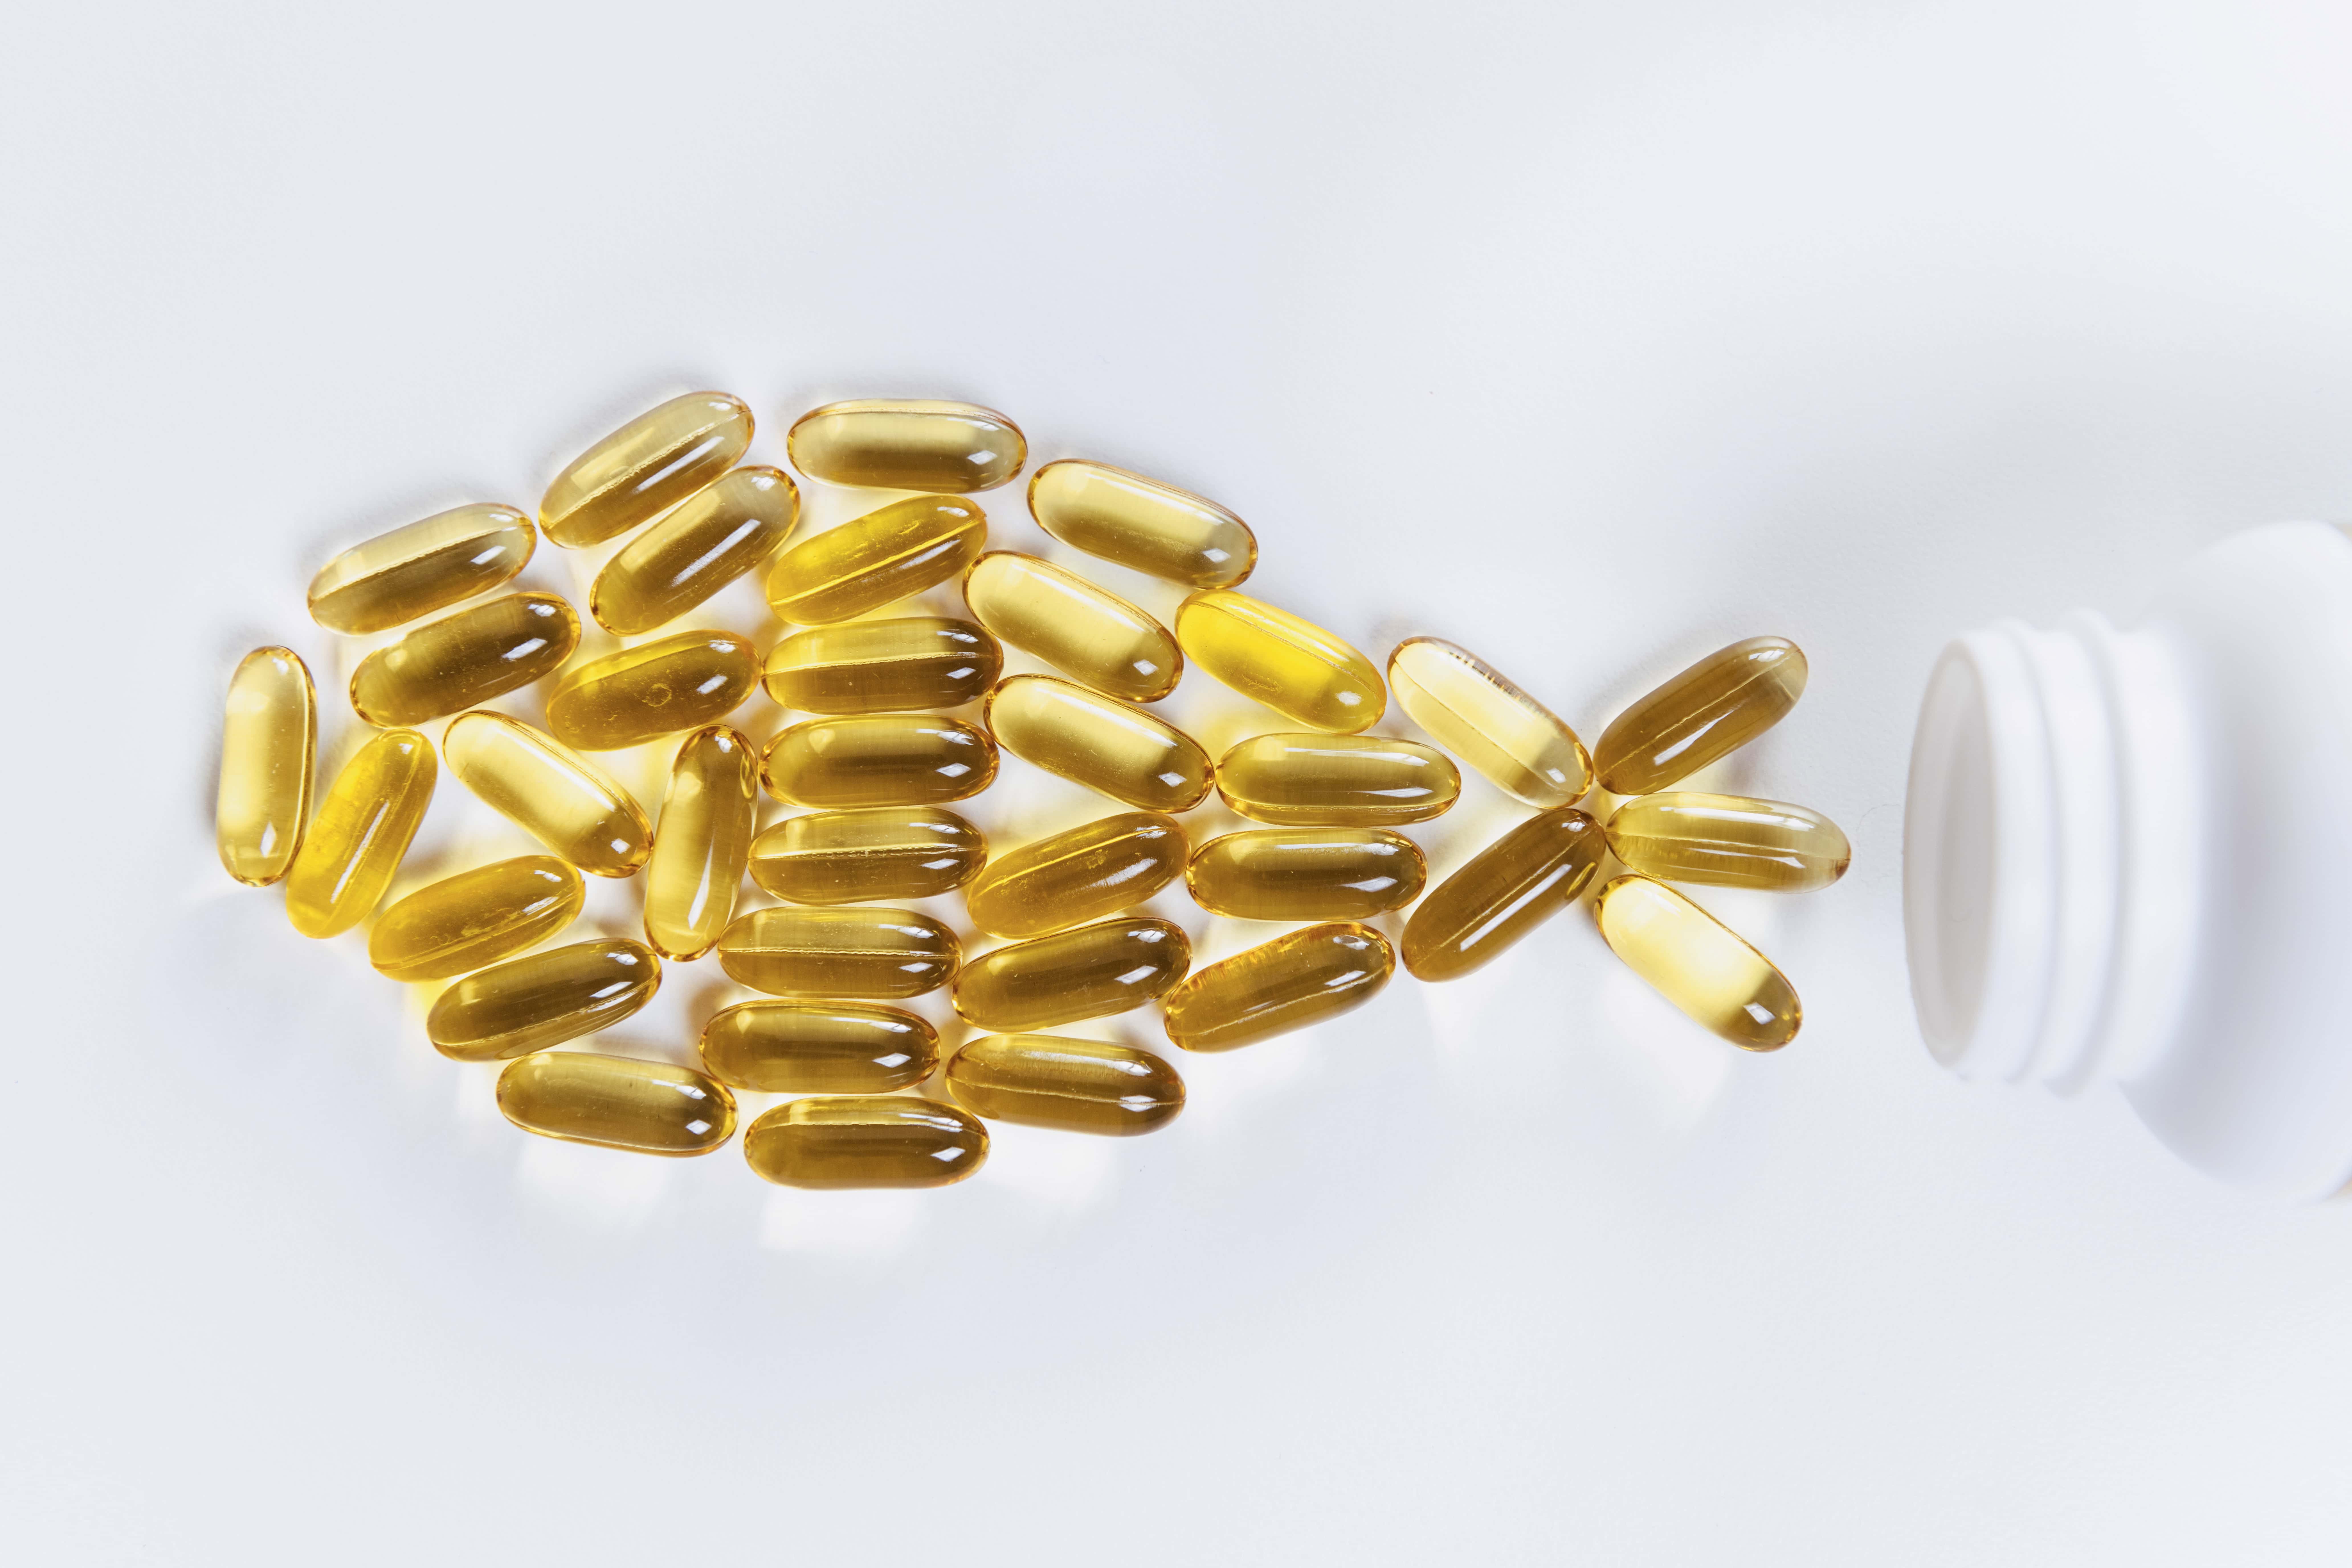 Lightbody Omega-3 supplement pills in shape of fish